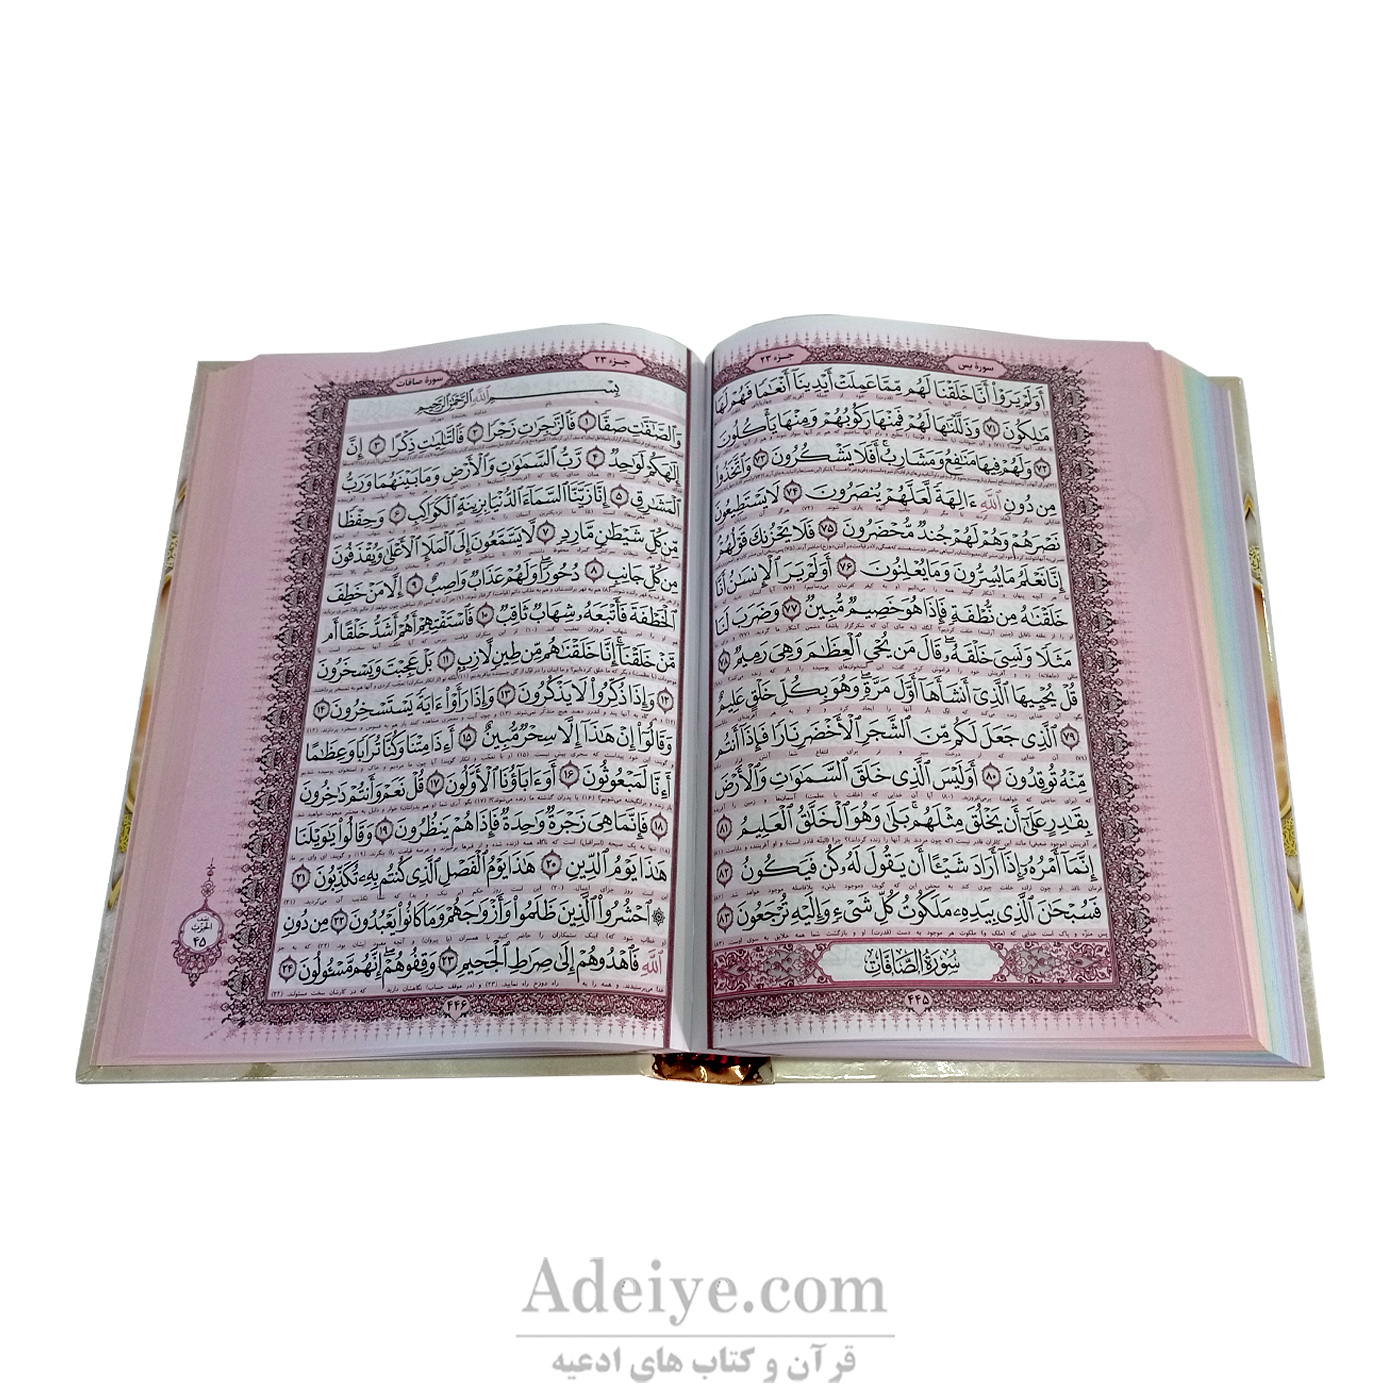 خط قرآن وصفحات رنگی